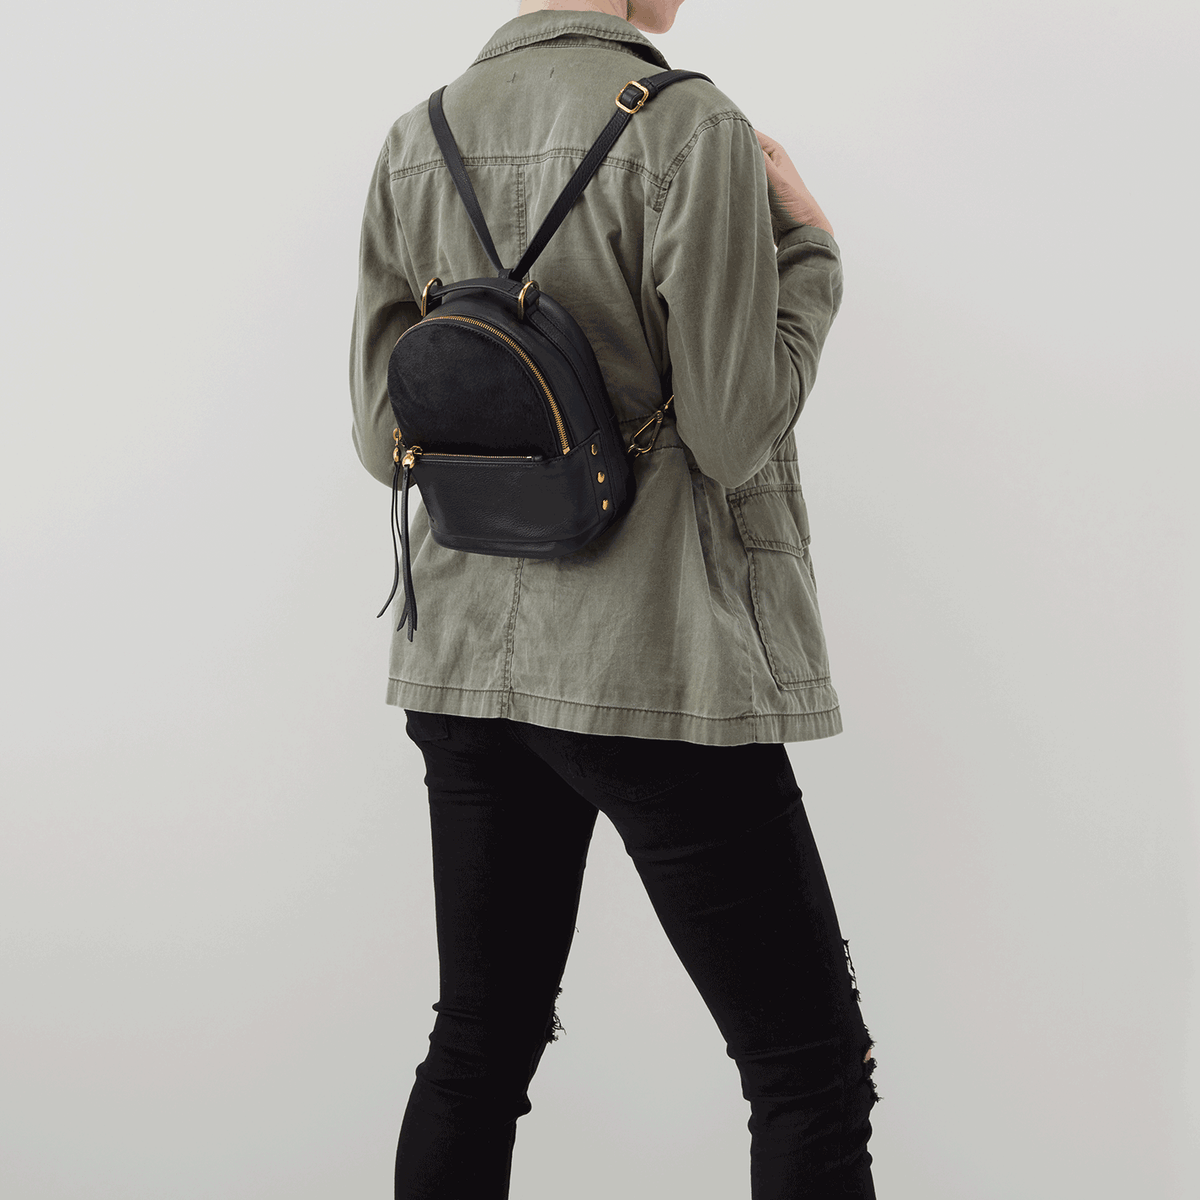 Revel Black Leather Convertible Backpack Crossbody | Hobo